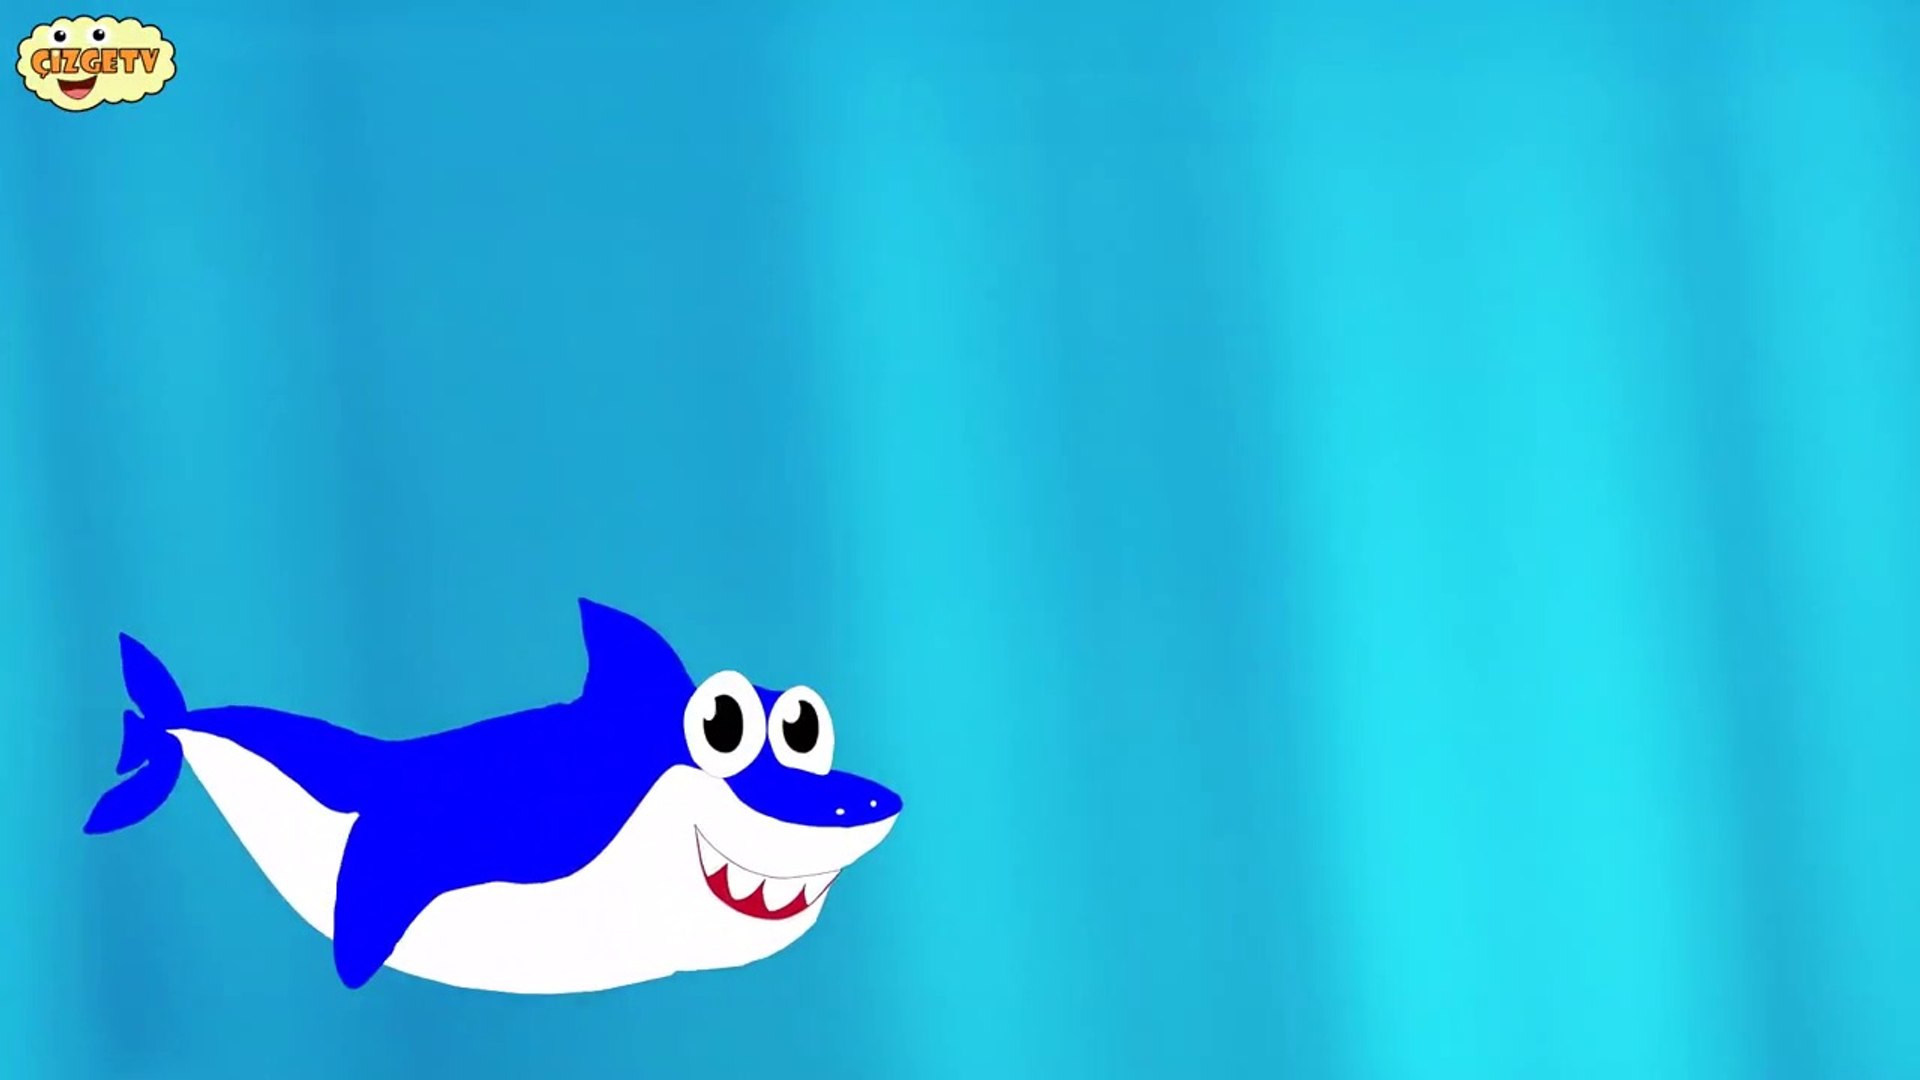 Baby Shark Ingilizce Bebek Kopek Baligi Sarkisi Ingilizce Cocuk Sarkilari Dailymotion Video